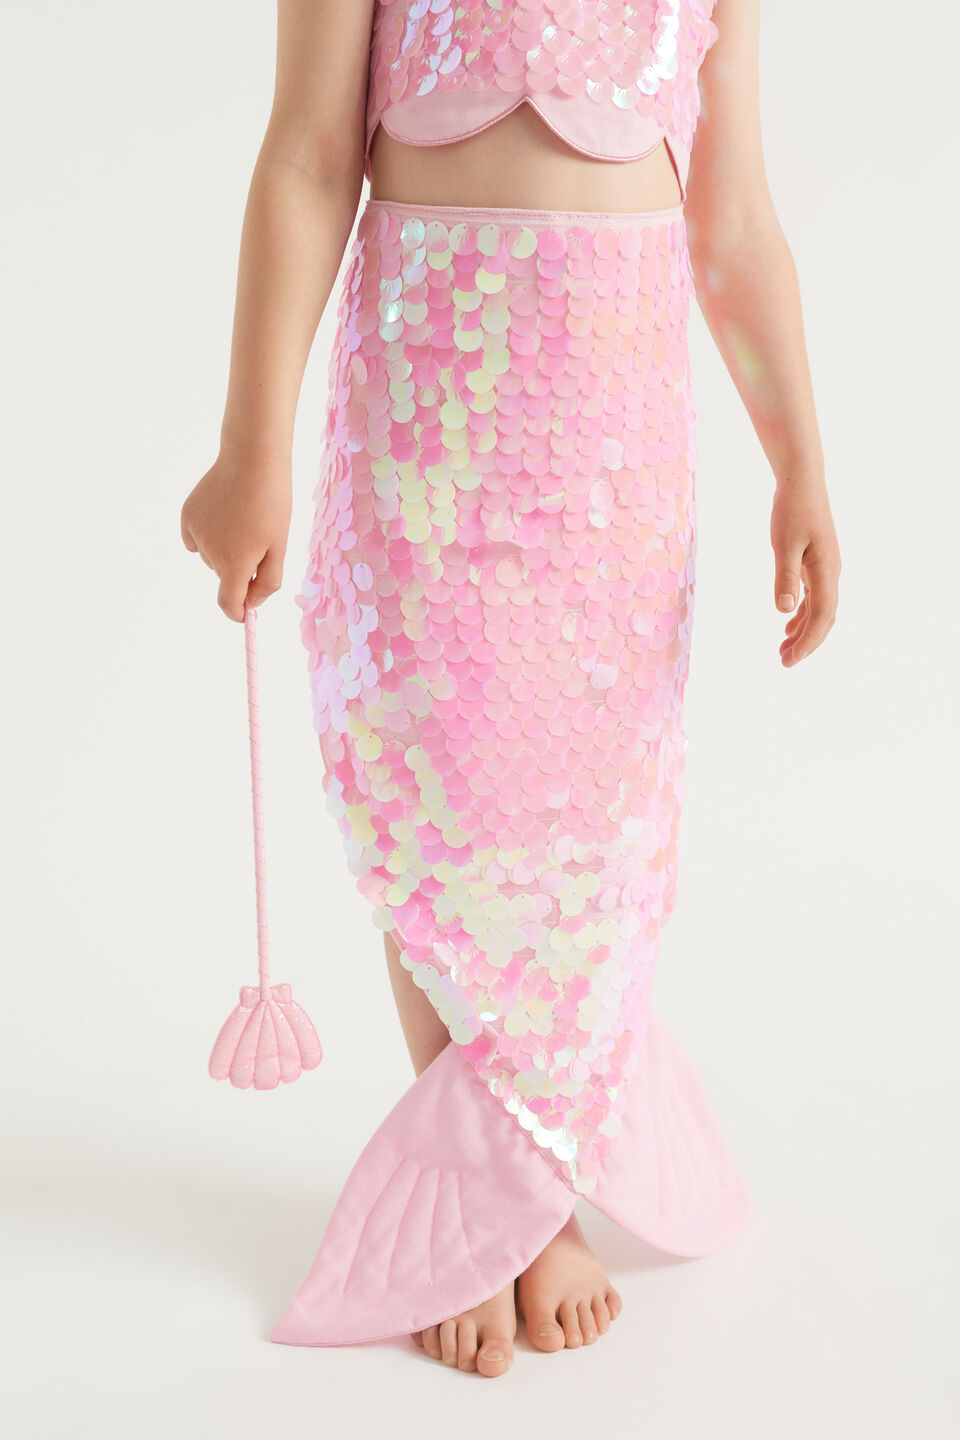 Mermaid Tail Dress Up Set  Multi